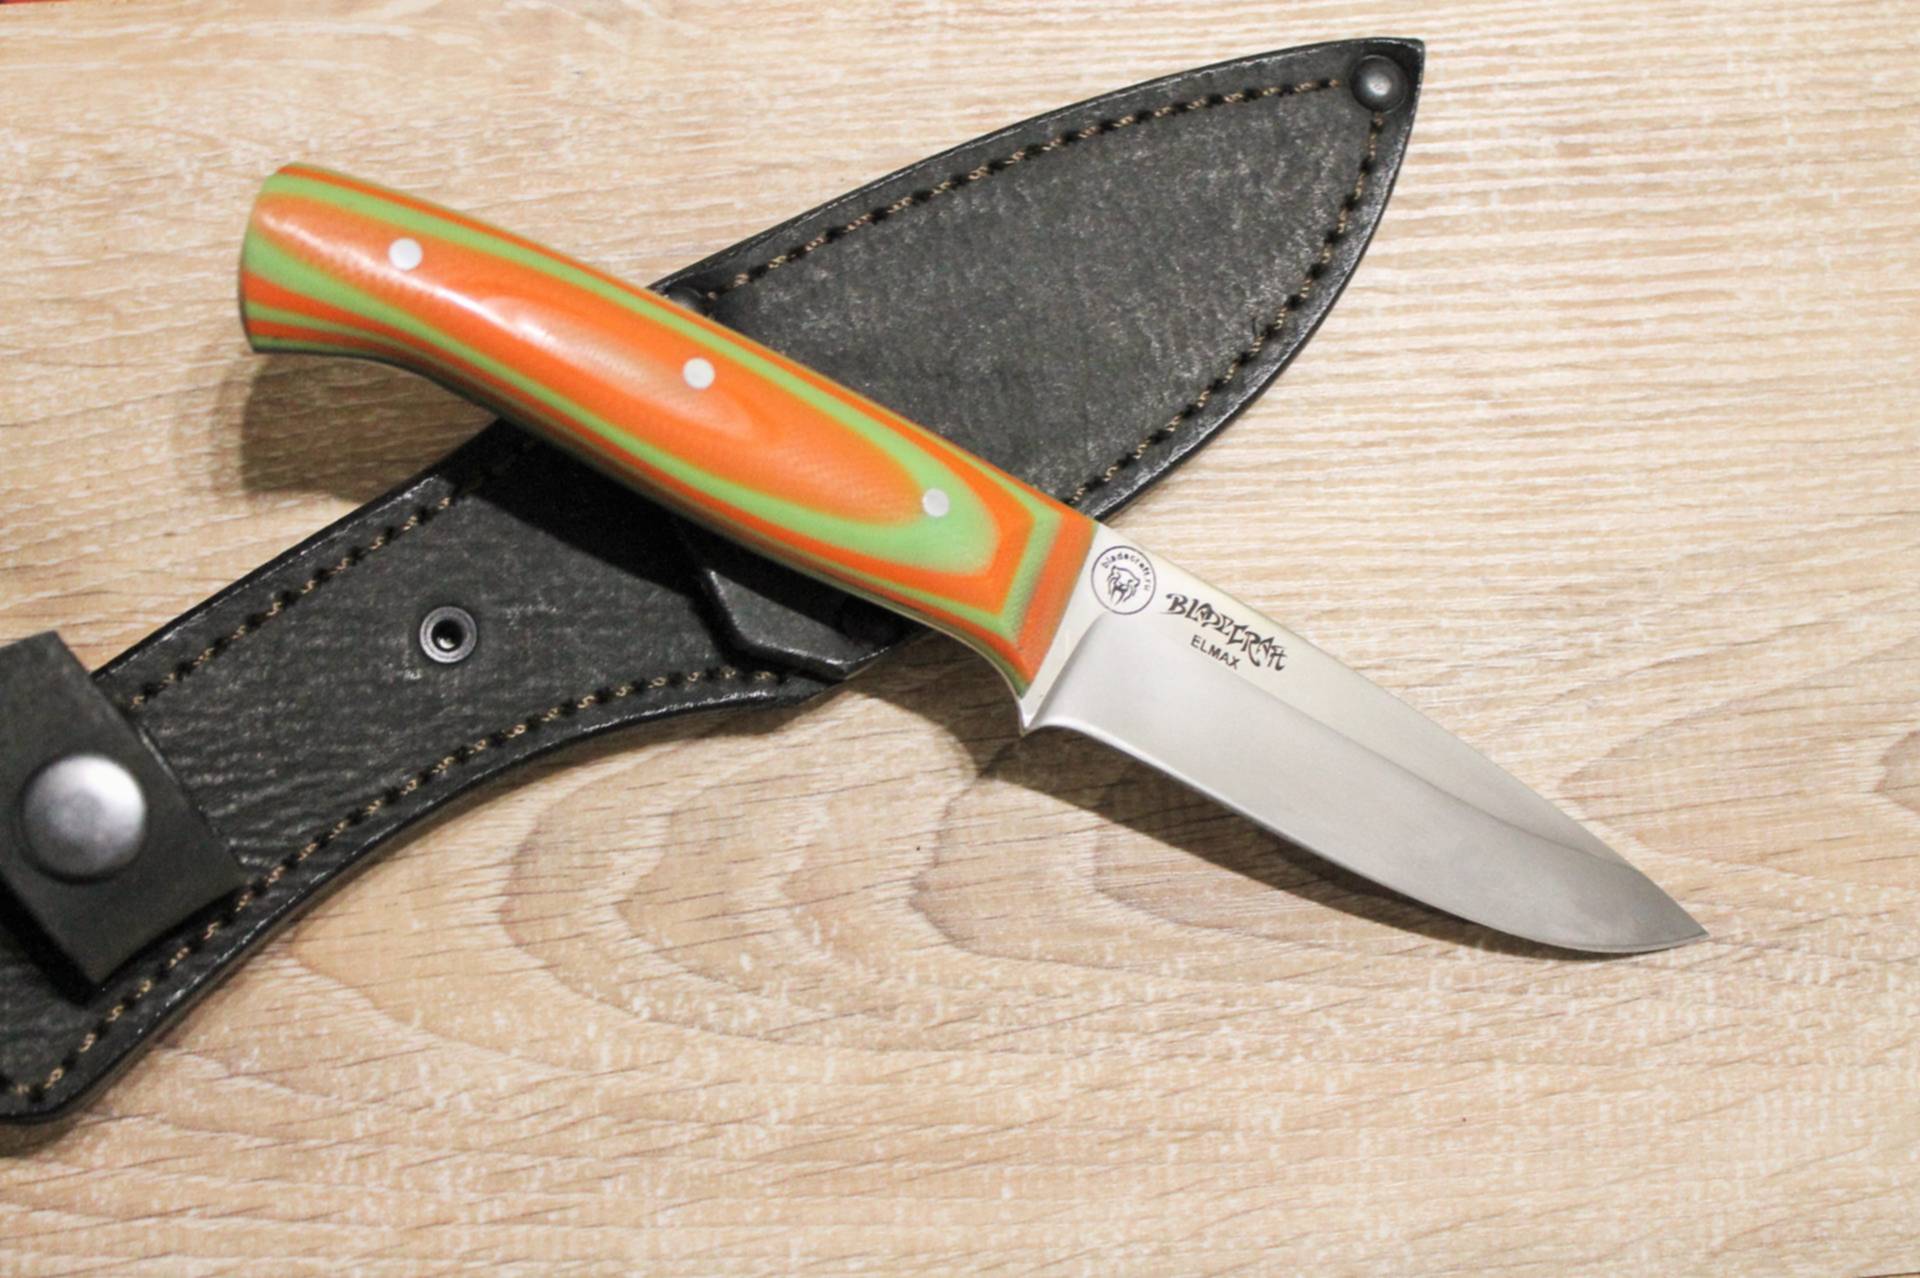 Ножи какой фирмы. Нож сталь n690. Походный кухонный нож. Нож фирмы Explorer. Самая популярная фирма ножей.